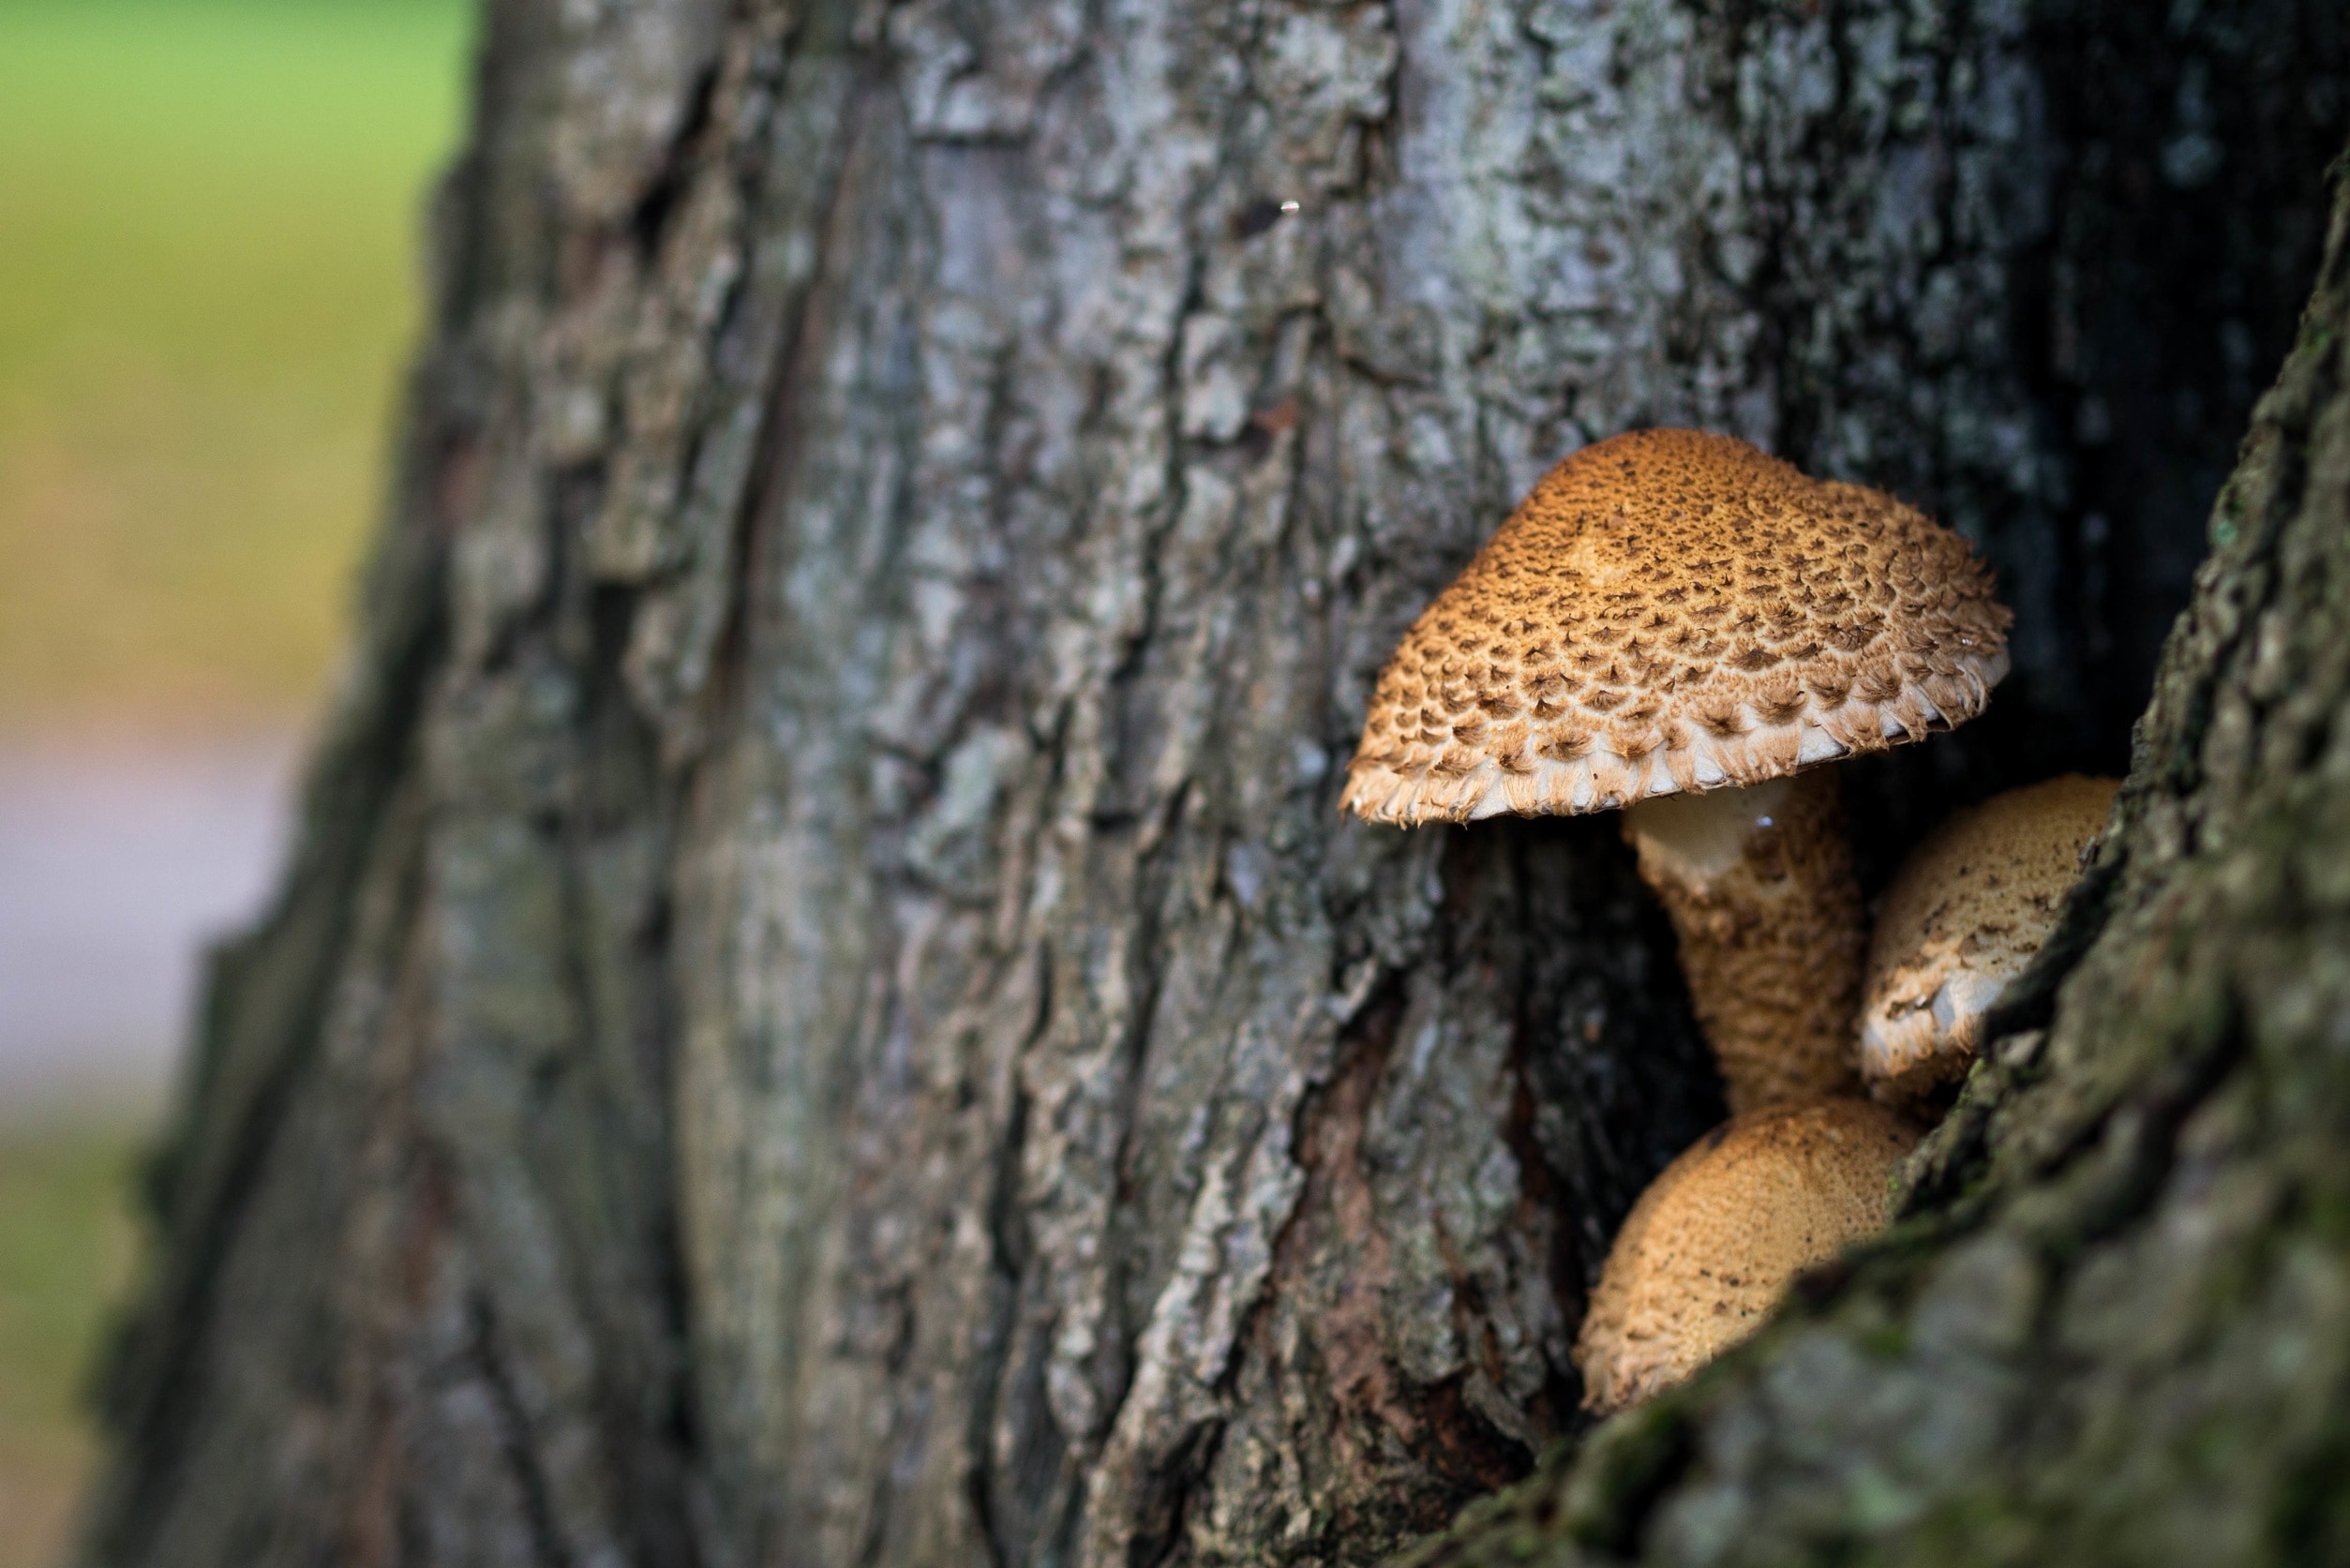 mushroom growing in tree